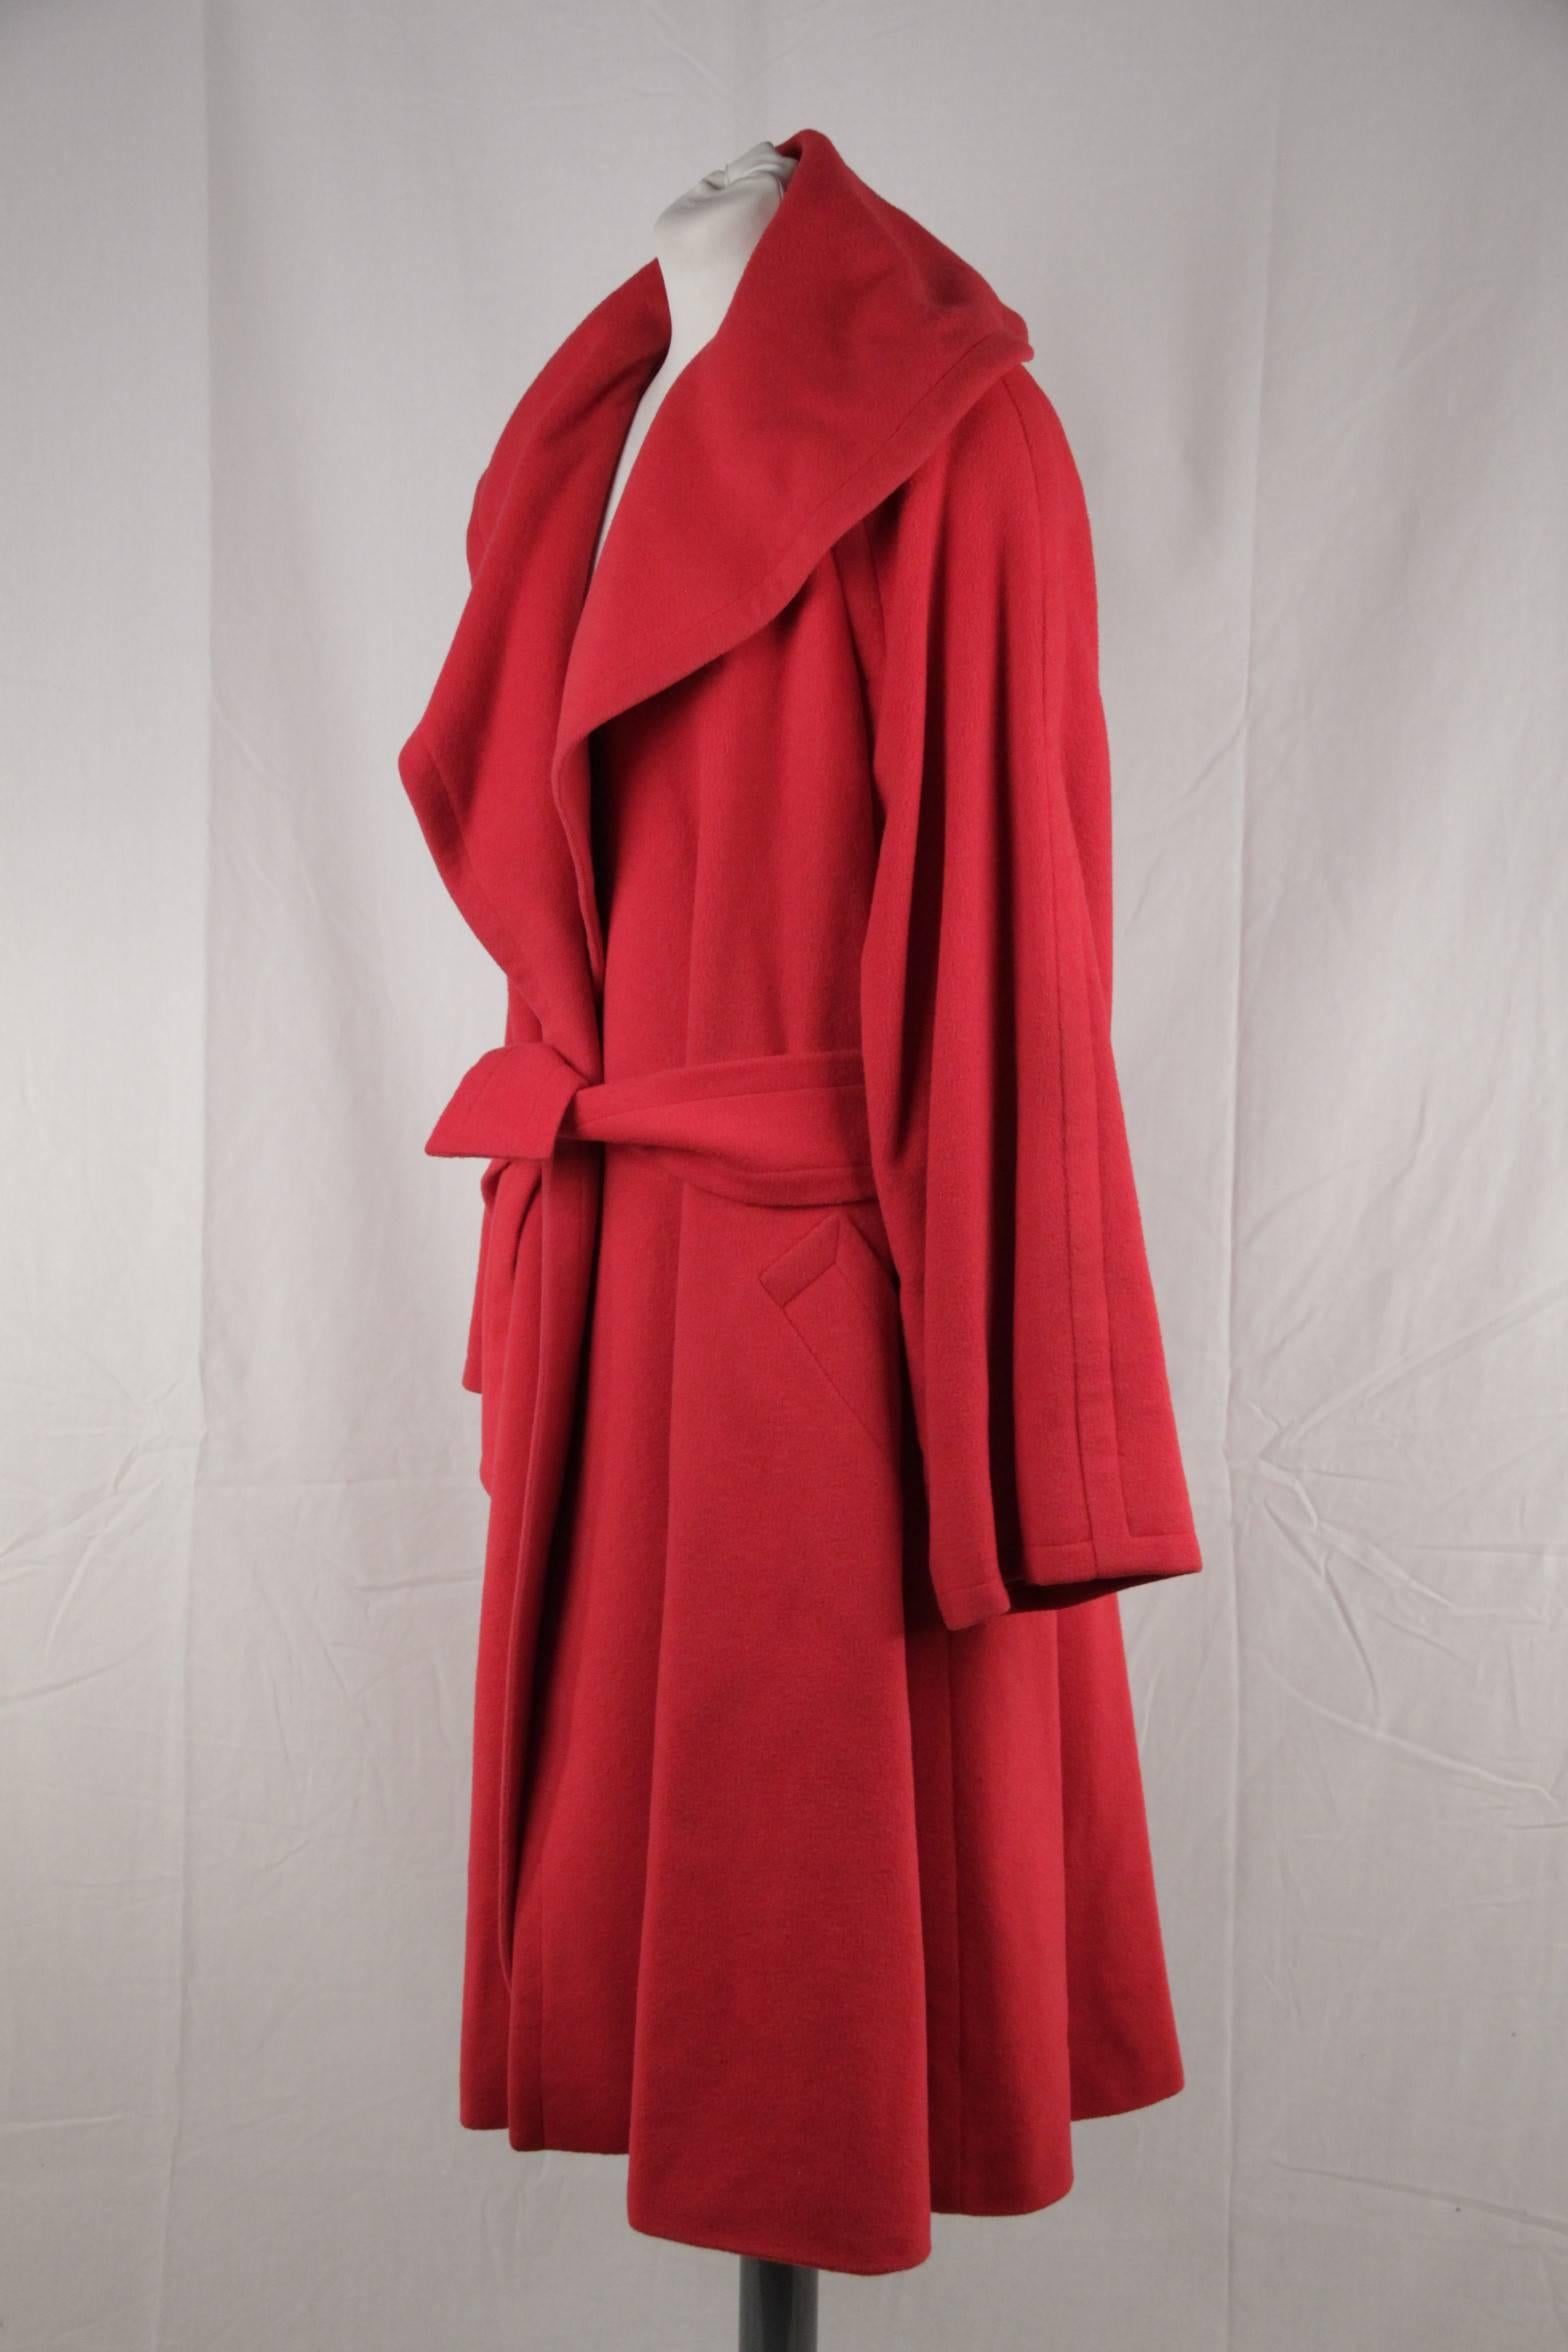 Women's CELINE Vintage Red Wool COAT w/ Self-Tie Belt SIZE 42